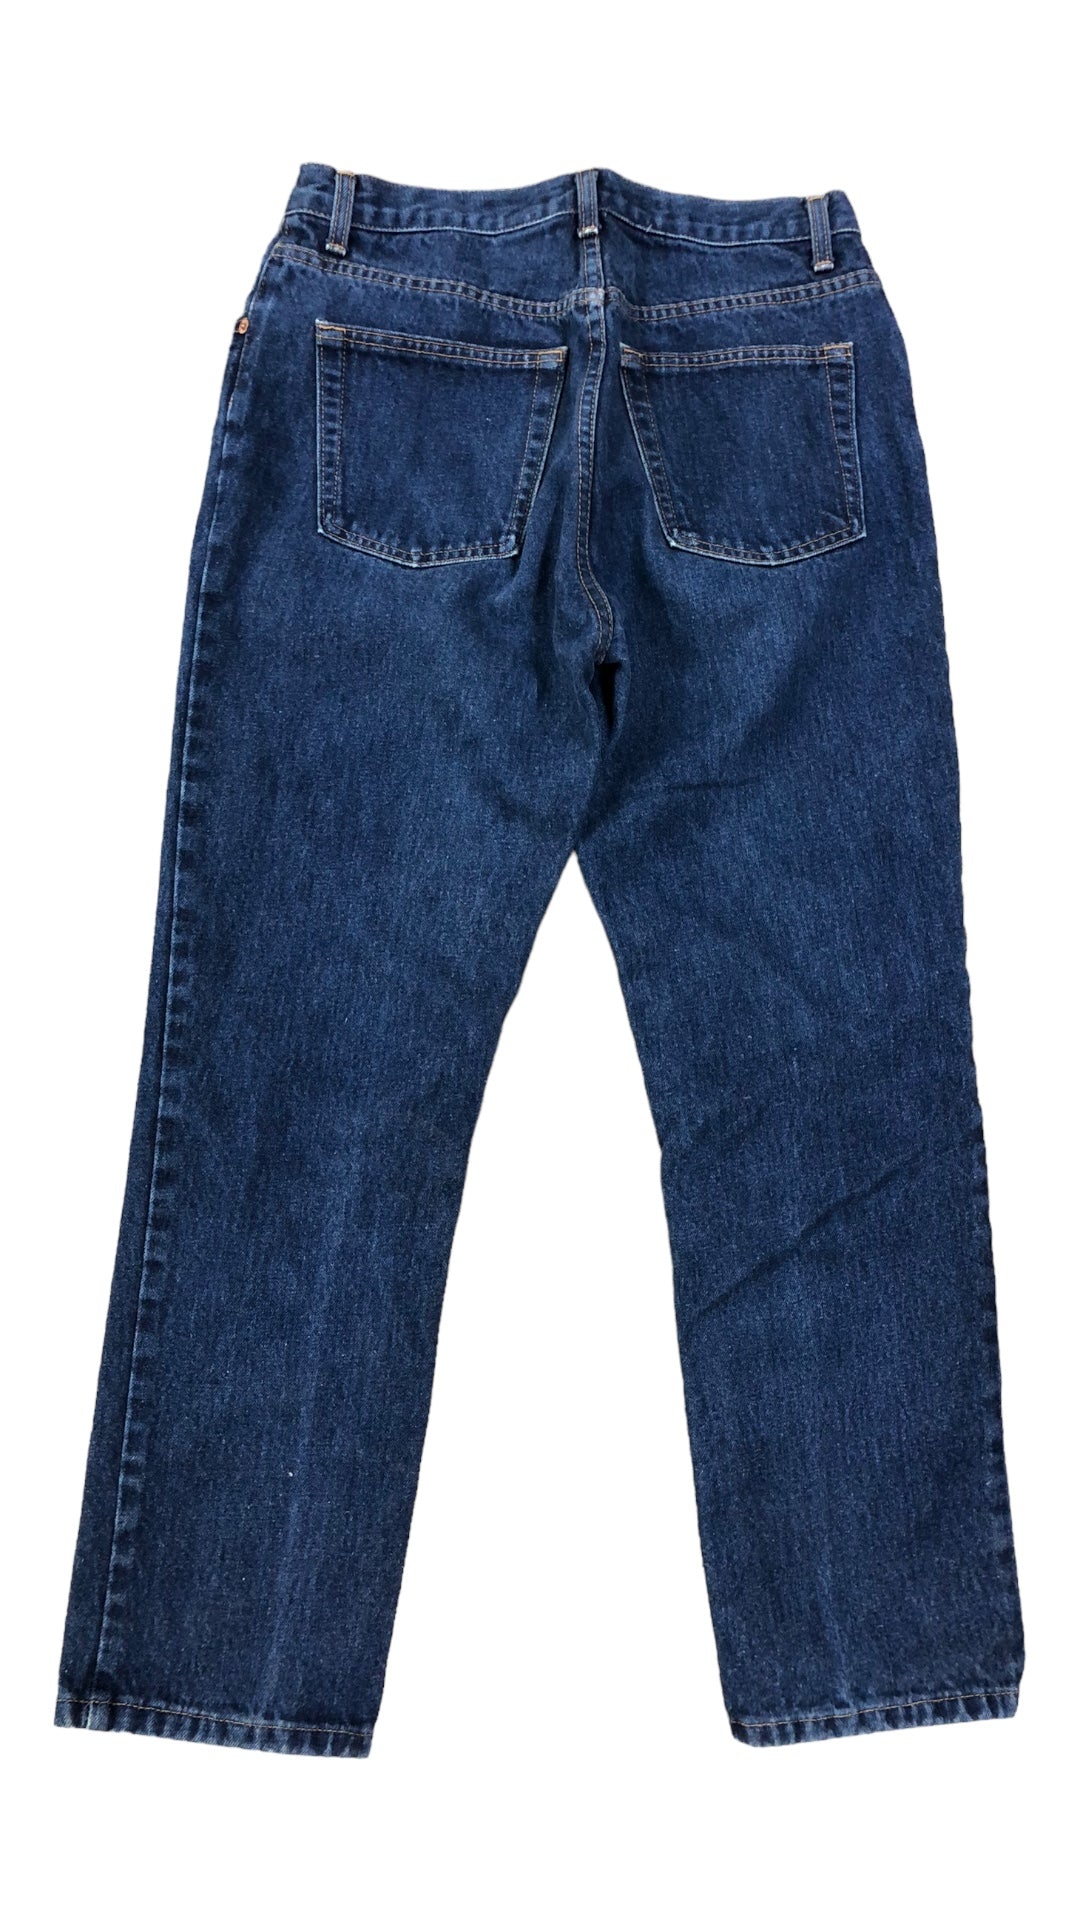 VTG GAP Darkwash Denim Jeans Sz 31x28